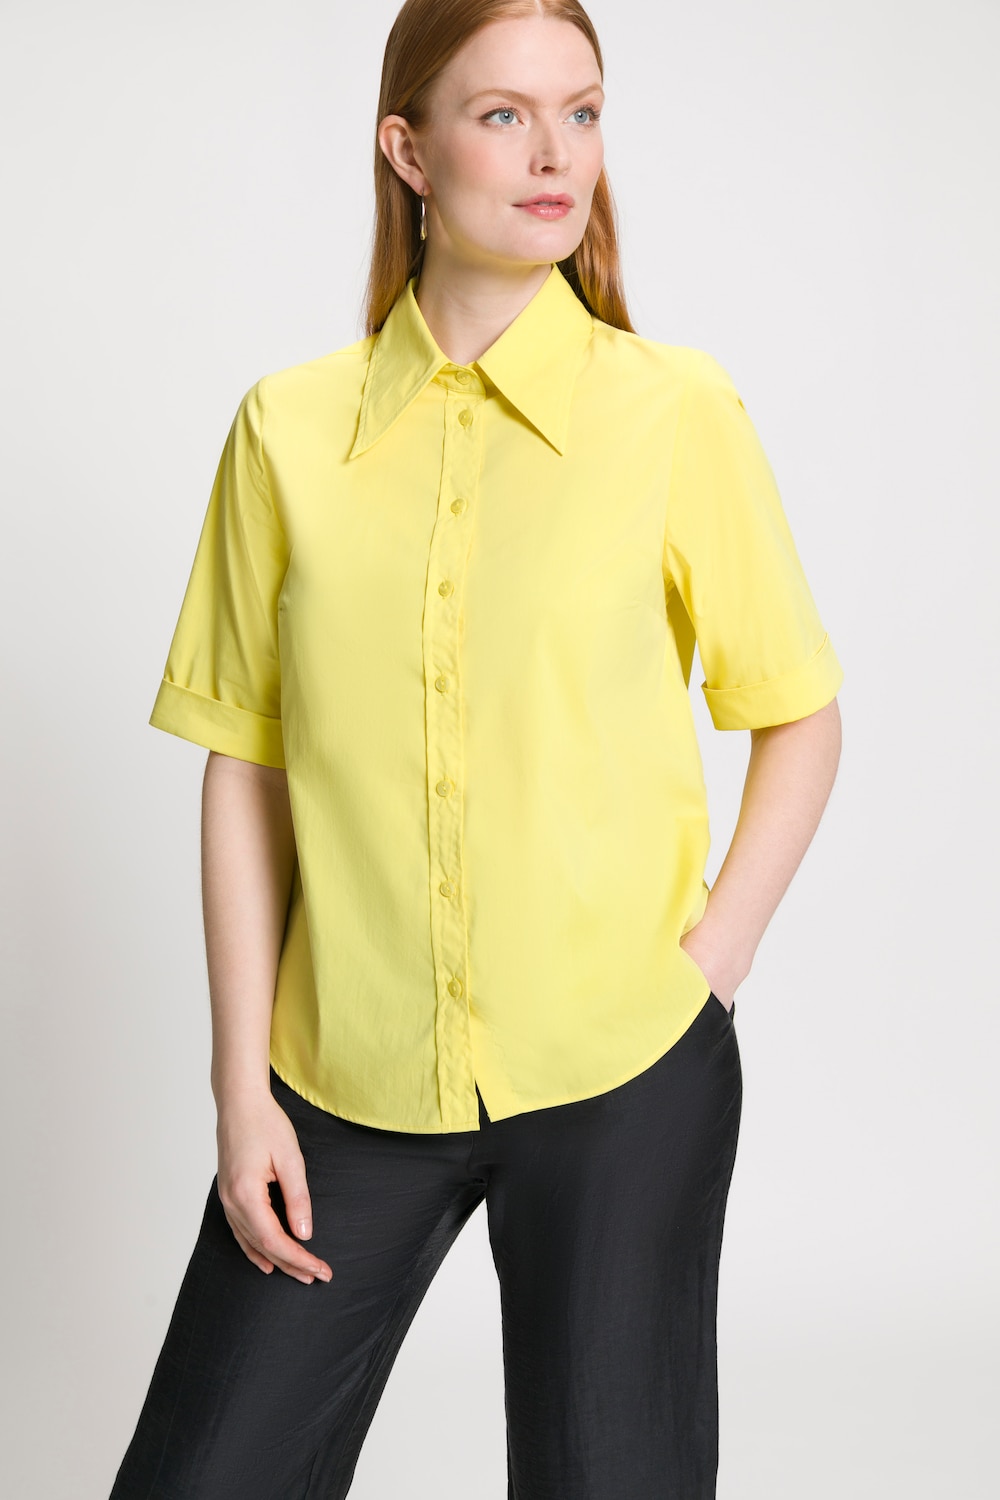 Grote Maten blouse, Dames, geel, Maat: 50/52, Katoen/Polyester, Ulla Popken